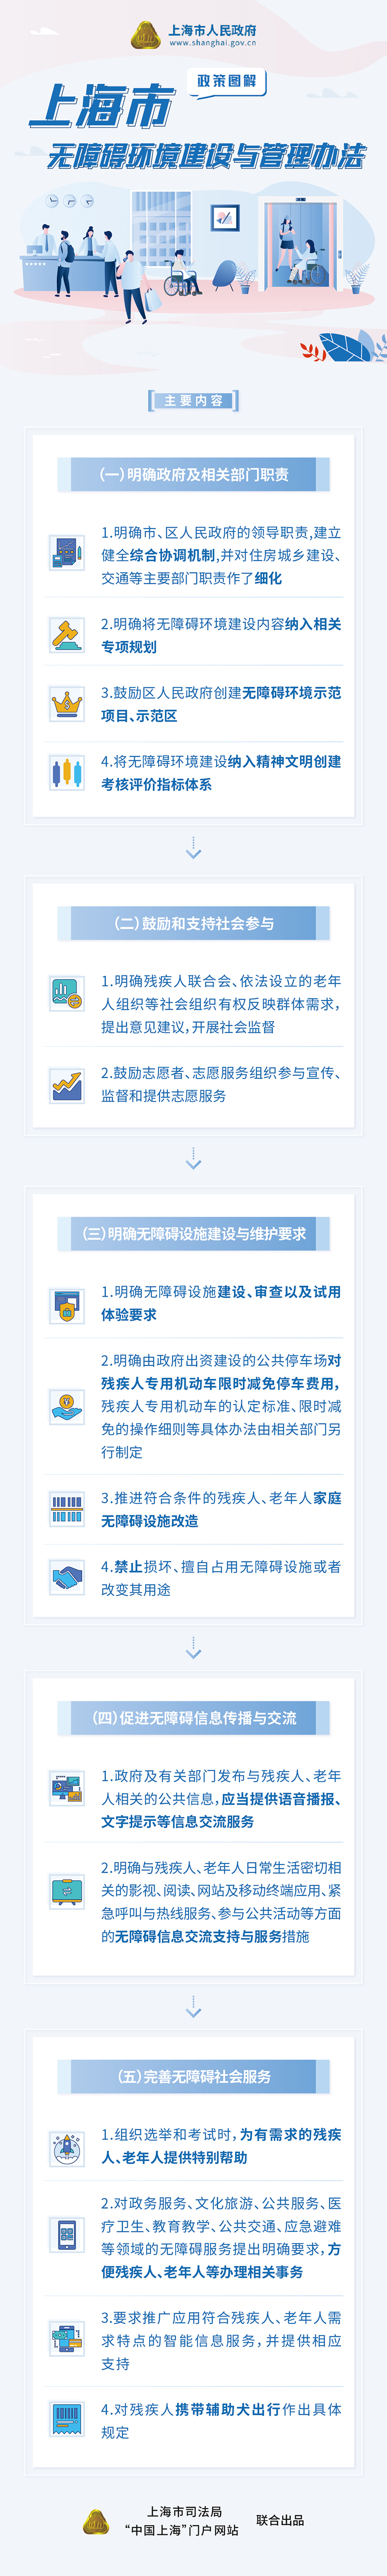 《上海市无障碍环境建设与管理办法》政策图解.jpg